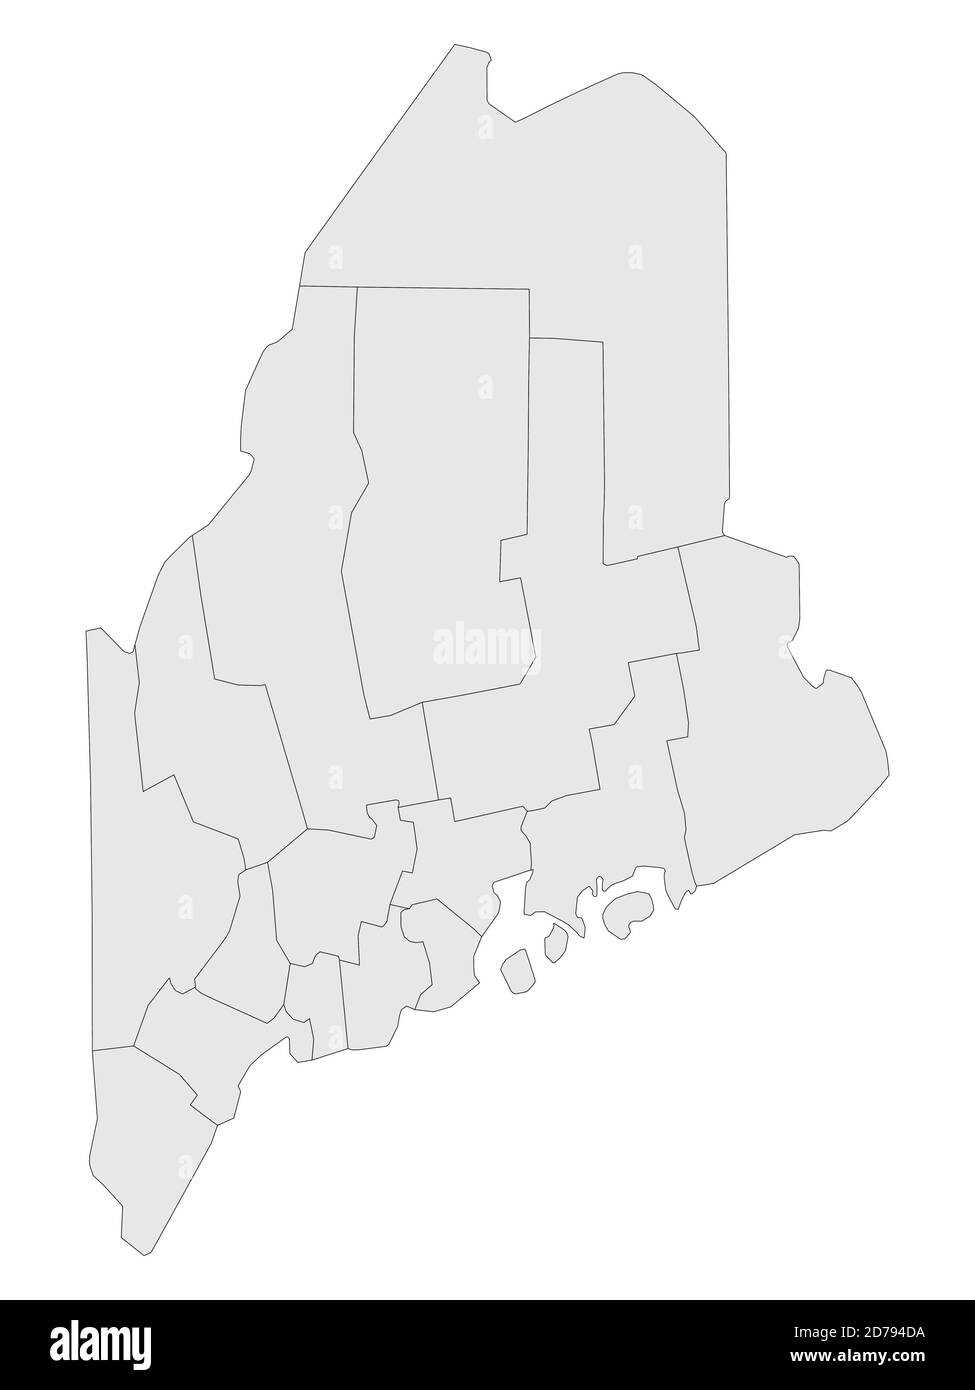 Carte des comtés électoraux à plateau gris de l'État fédéral du Maine des États-Unis d'Amérique Illustration de Vecteur